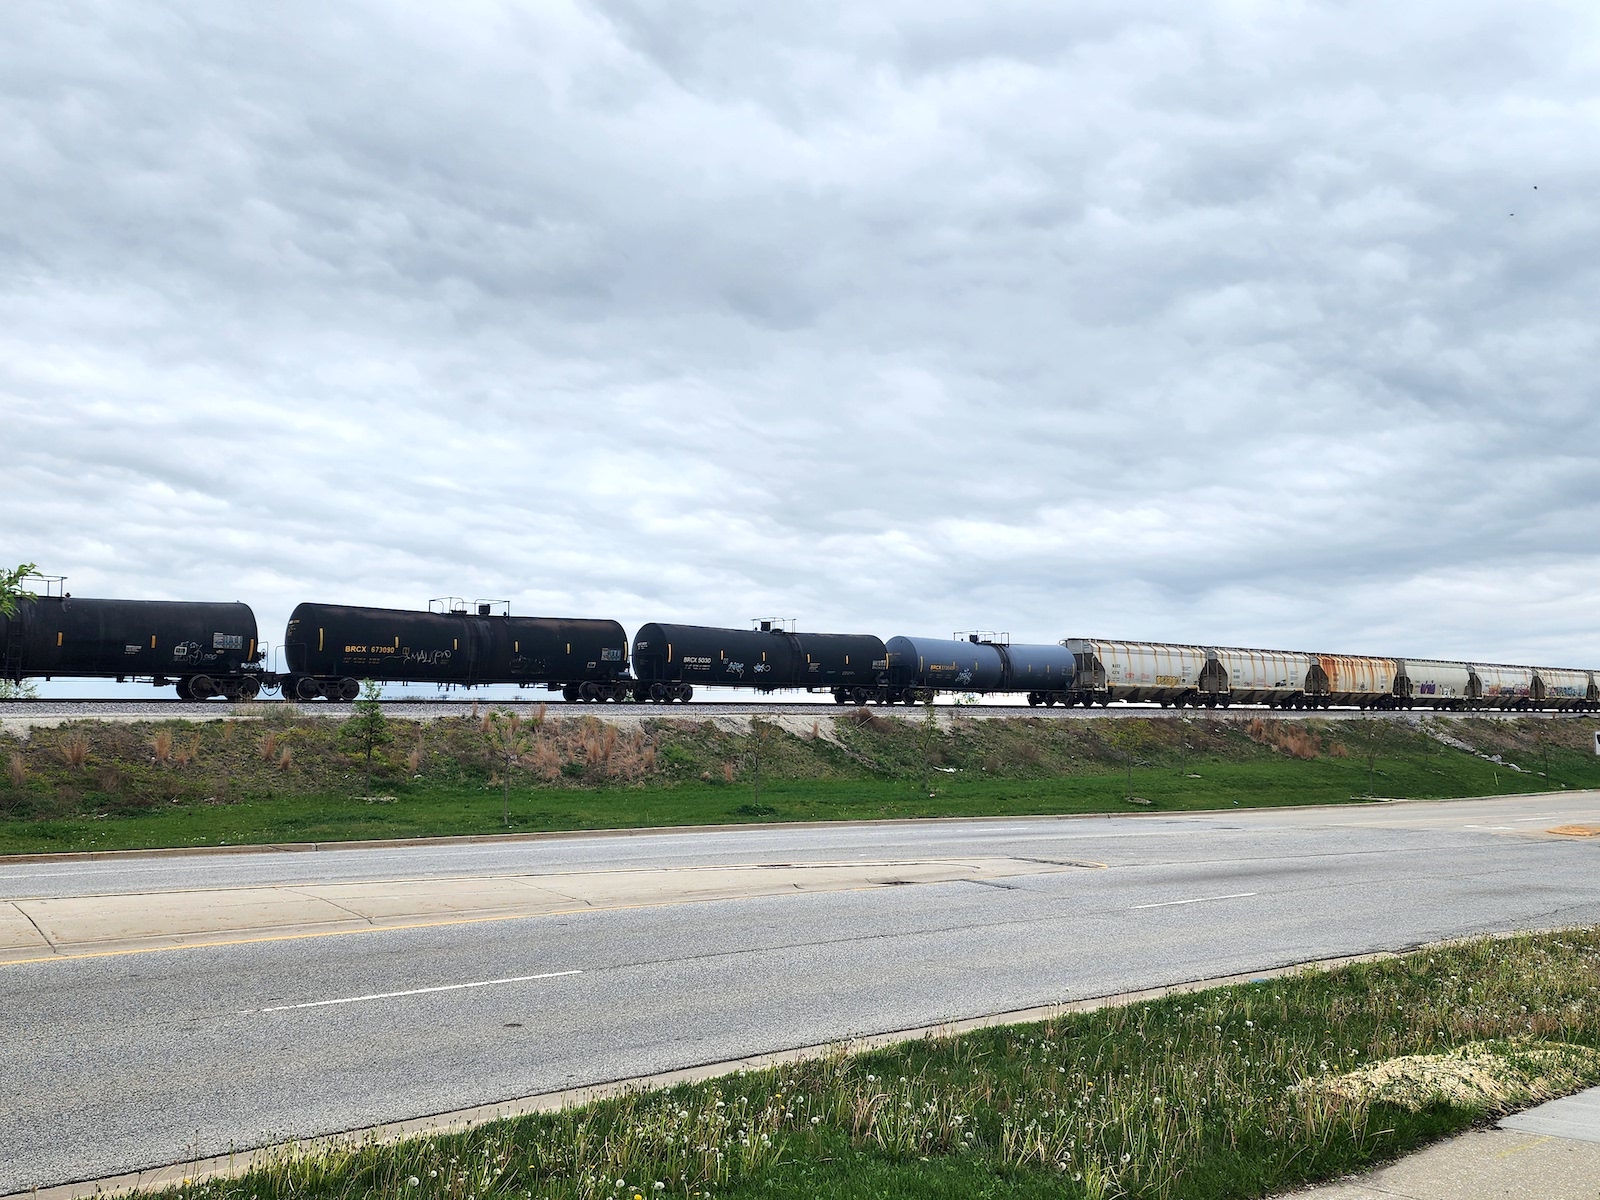 A long train carrying several tankers runs through Camanche, Iowa.